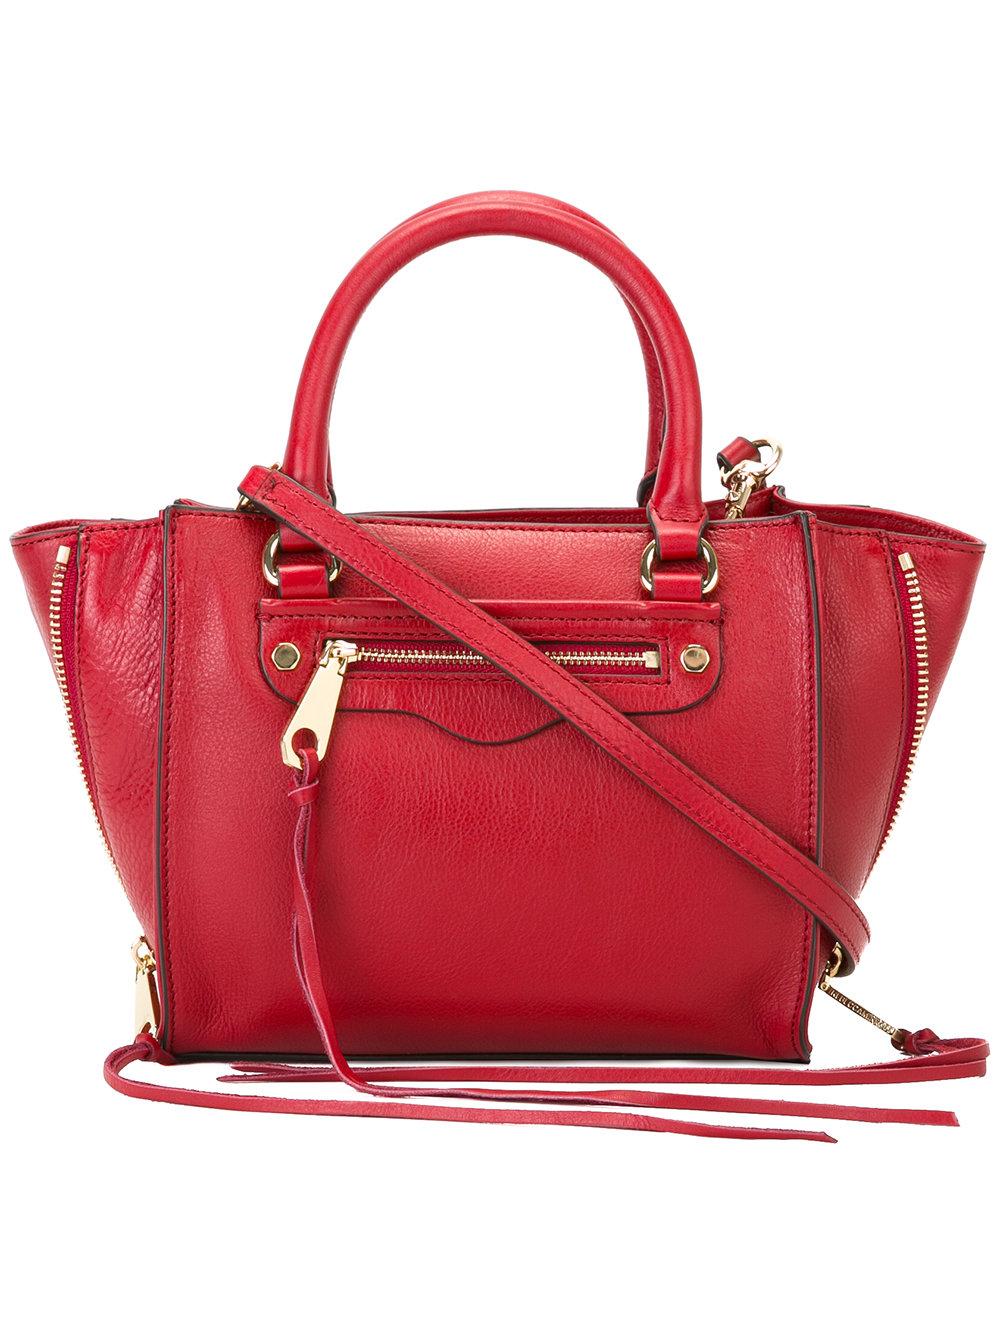 Lyst - Rebecca Minkoff Plain Shoulder Bag in Red